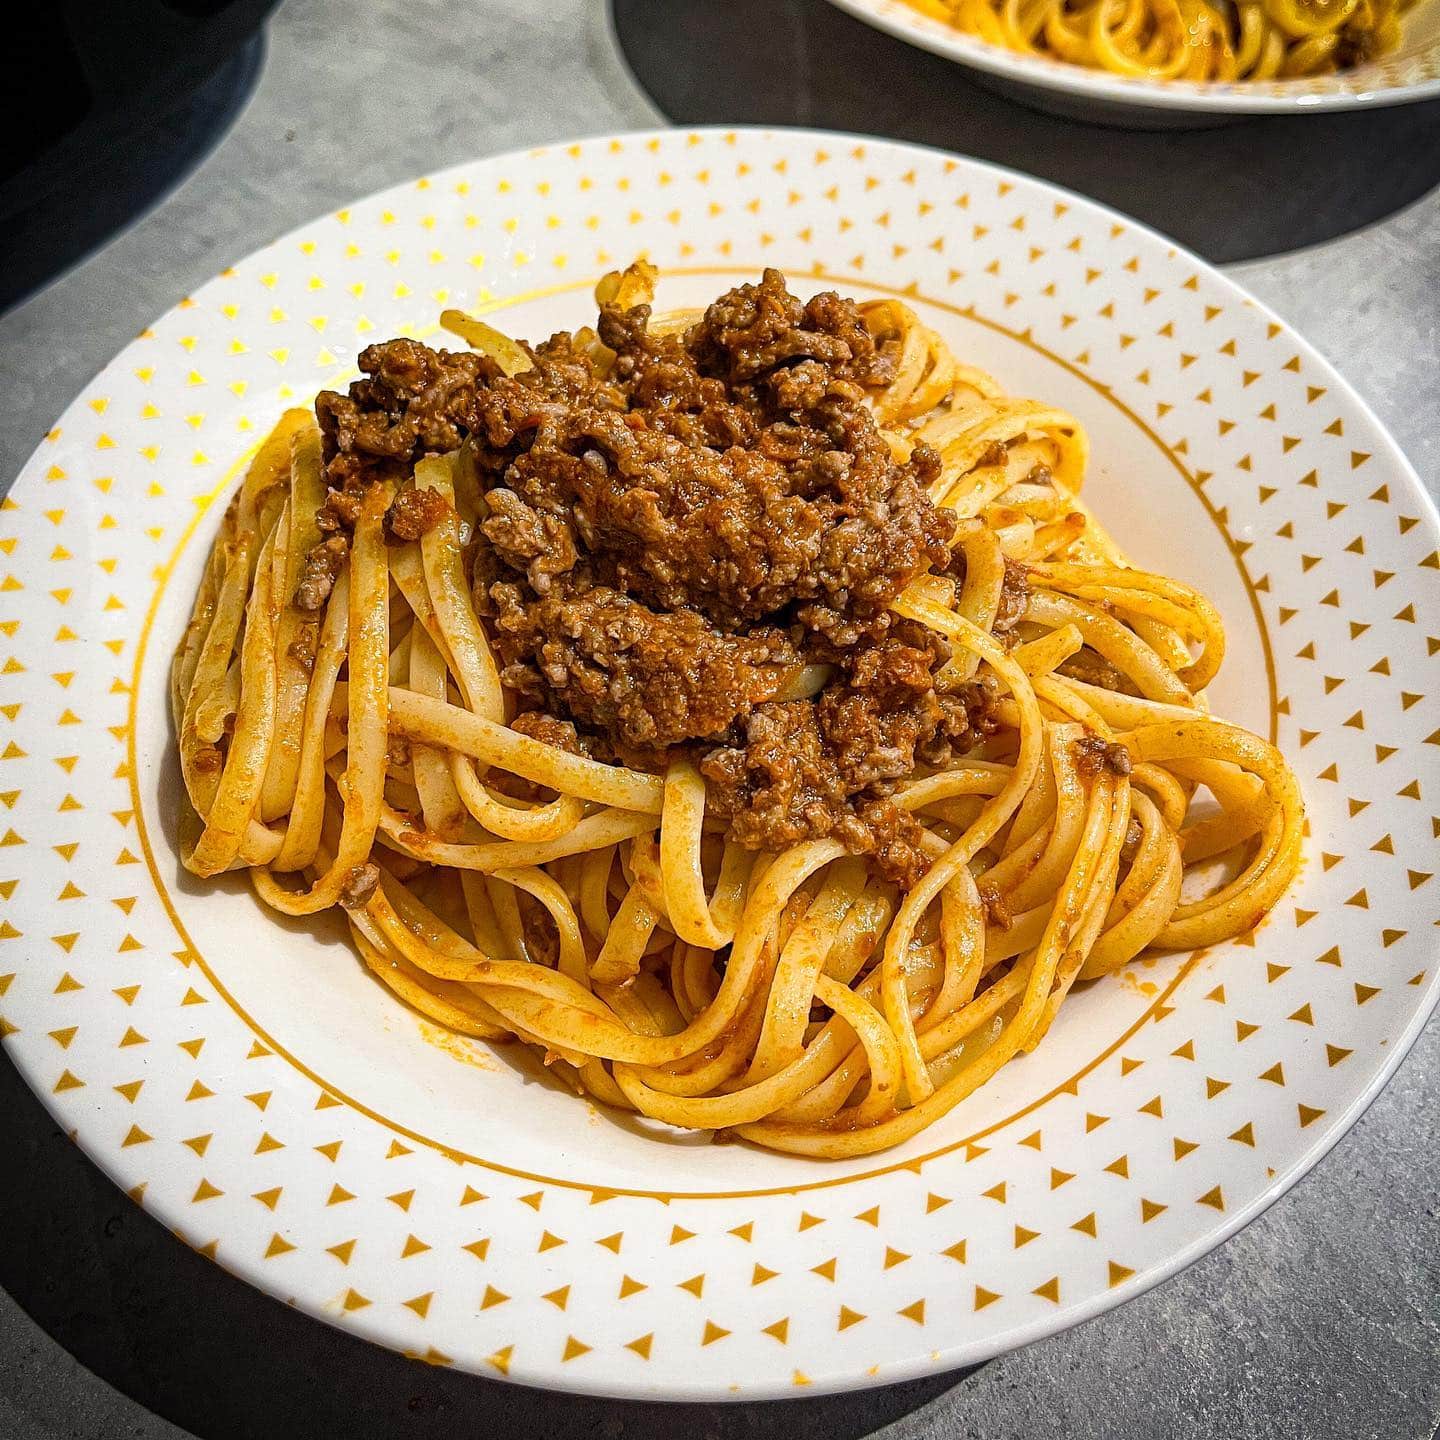 [𝚂𝚙𝚊𝚐𝚑𝚎𝚝𝚝𝚒 𝚋𝚘𝚕𝚘𝚐𝚗𝚊𝚒𝚜𝚎 🍝]

Miam 🫣 vous aimez ce plat si classique ? Pour ma part, je n’en mange pas souvent mais j’aime beaucoup 🫶.

———————————————————————

#cuisinemoi #recette #recettefacile #recettesimple #recetterapide #blogcuisine #blogolyon #bolognaise #spaghetti #spaghettibolognaise  #homemade #homemadefood #food #foodpics